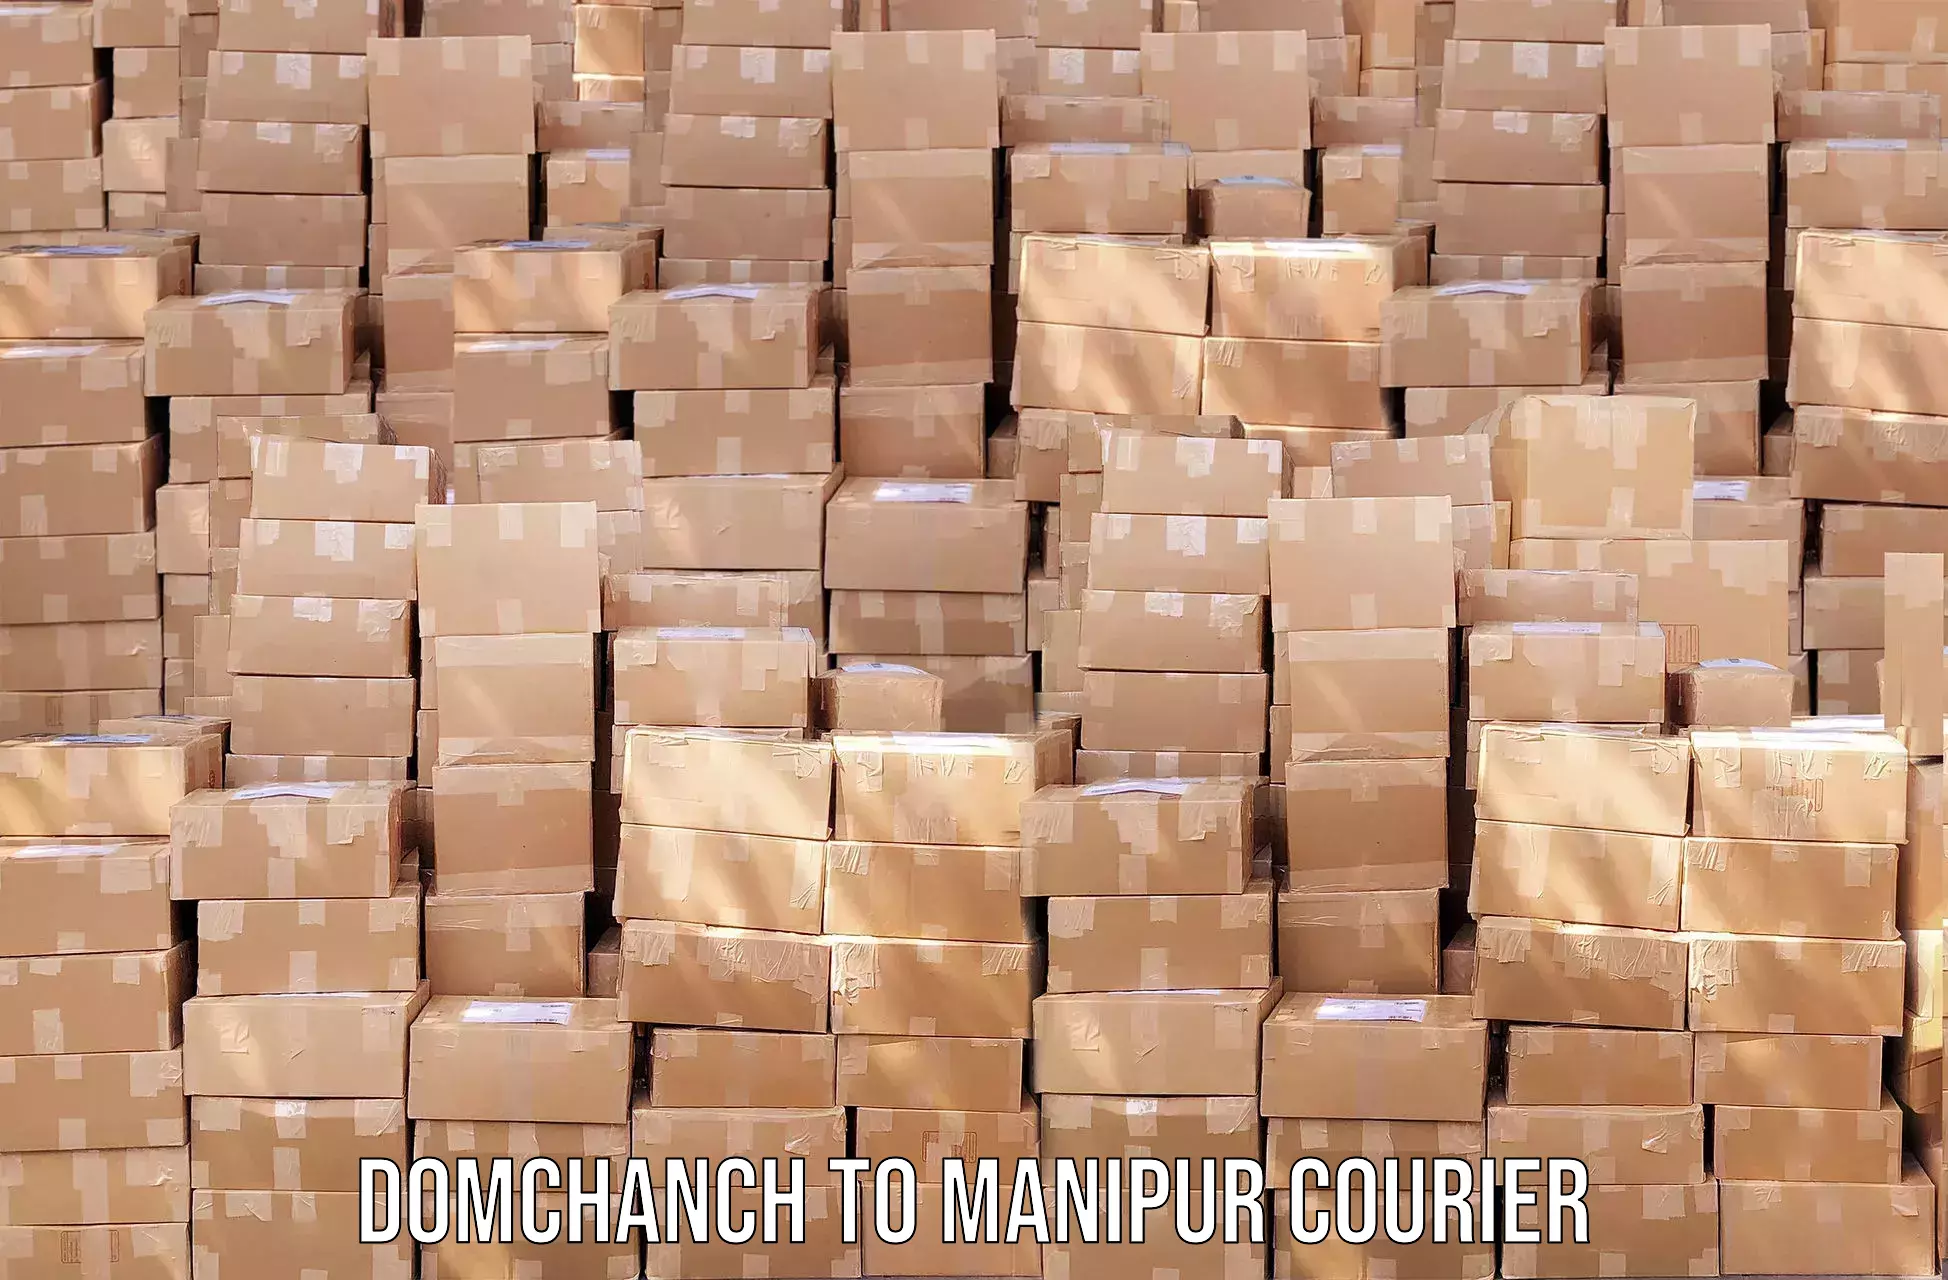 Premium courier services Domchanch to Manipur